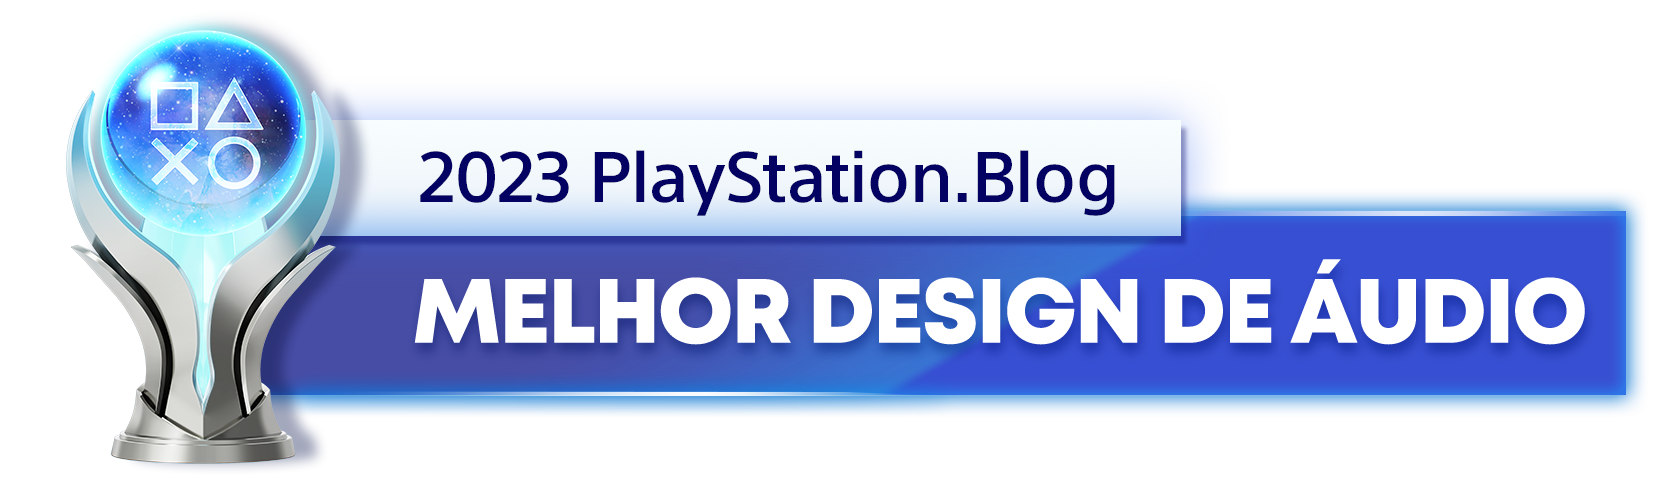  "Troféu de Platina para o vencedor da categoria Melhor Design de Áudio de 2023 do PlayStation Blog "